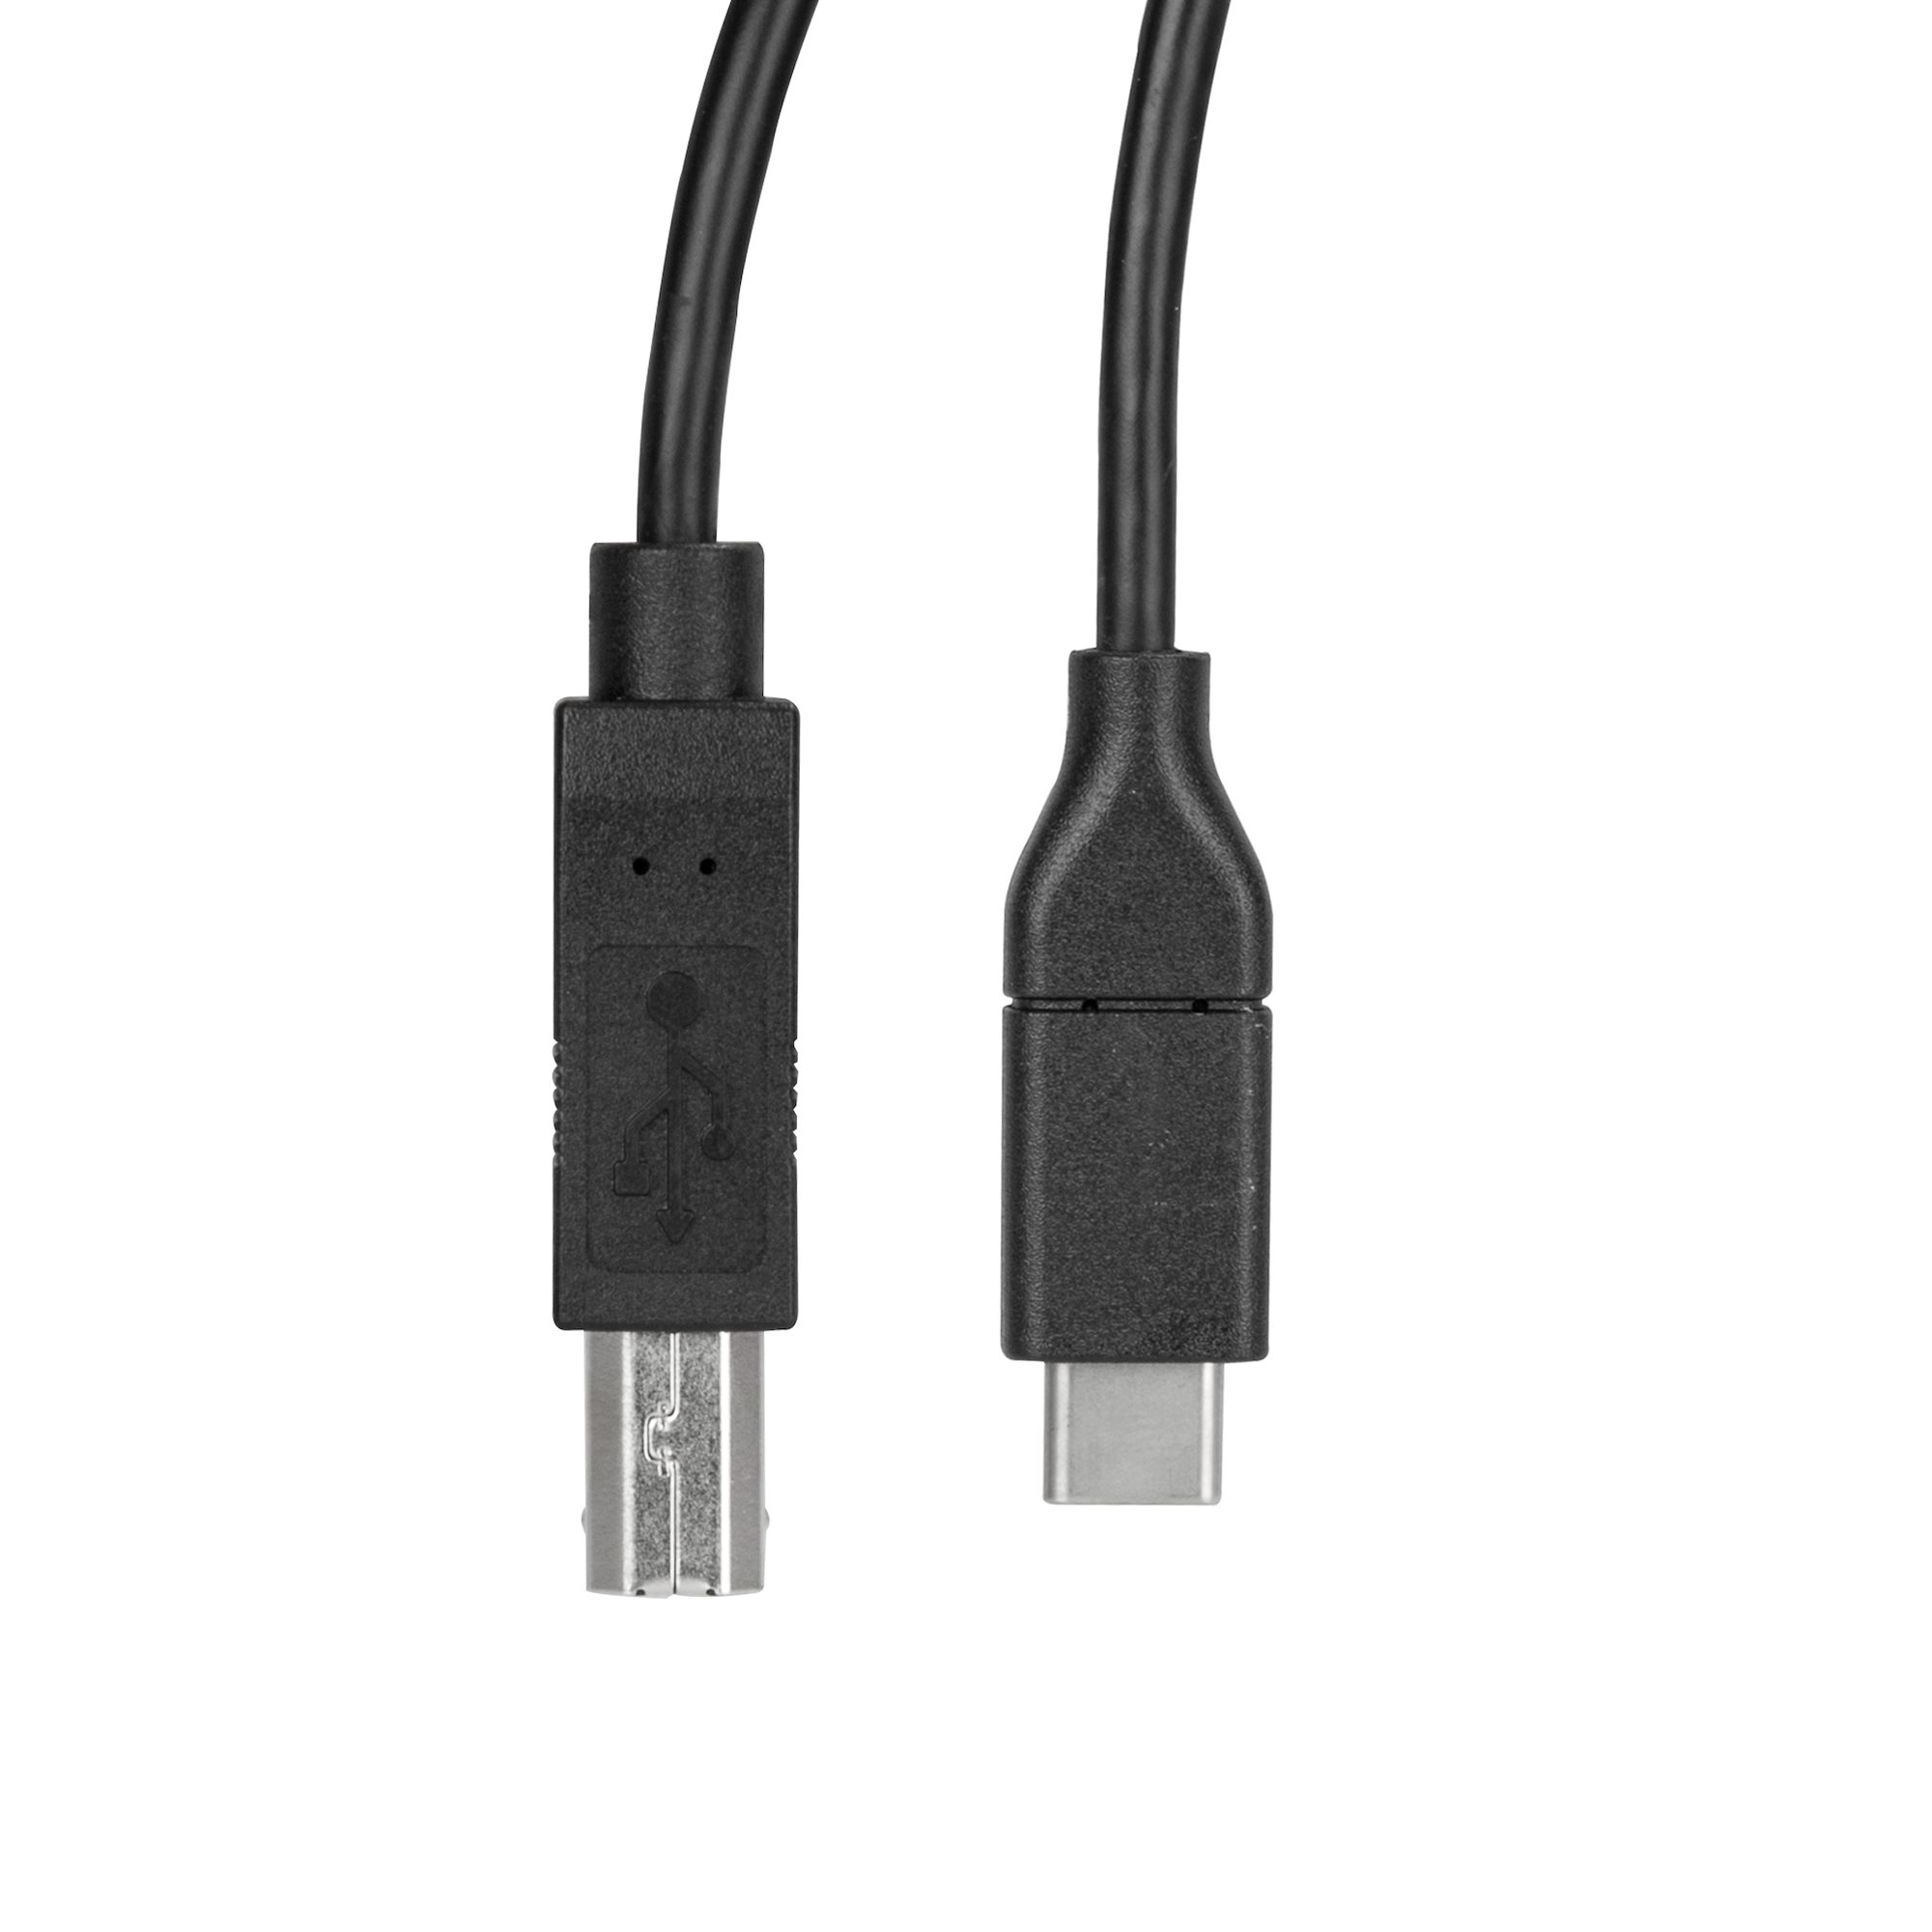 USB C Vers Câble D'imprimante USB B 2.0 Câble Tressé - Temu Canada